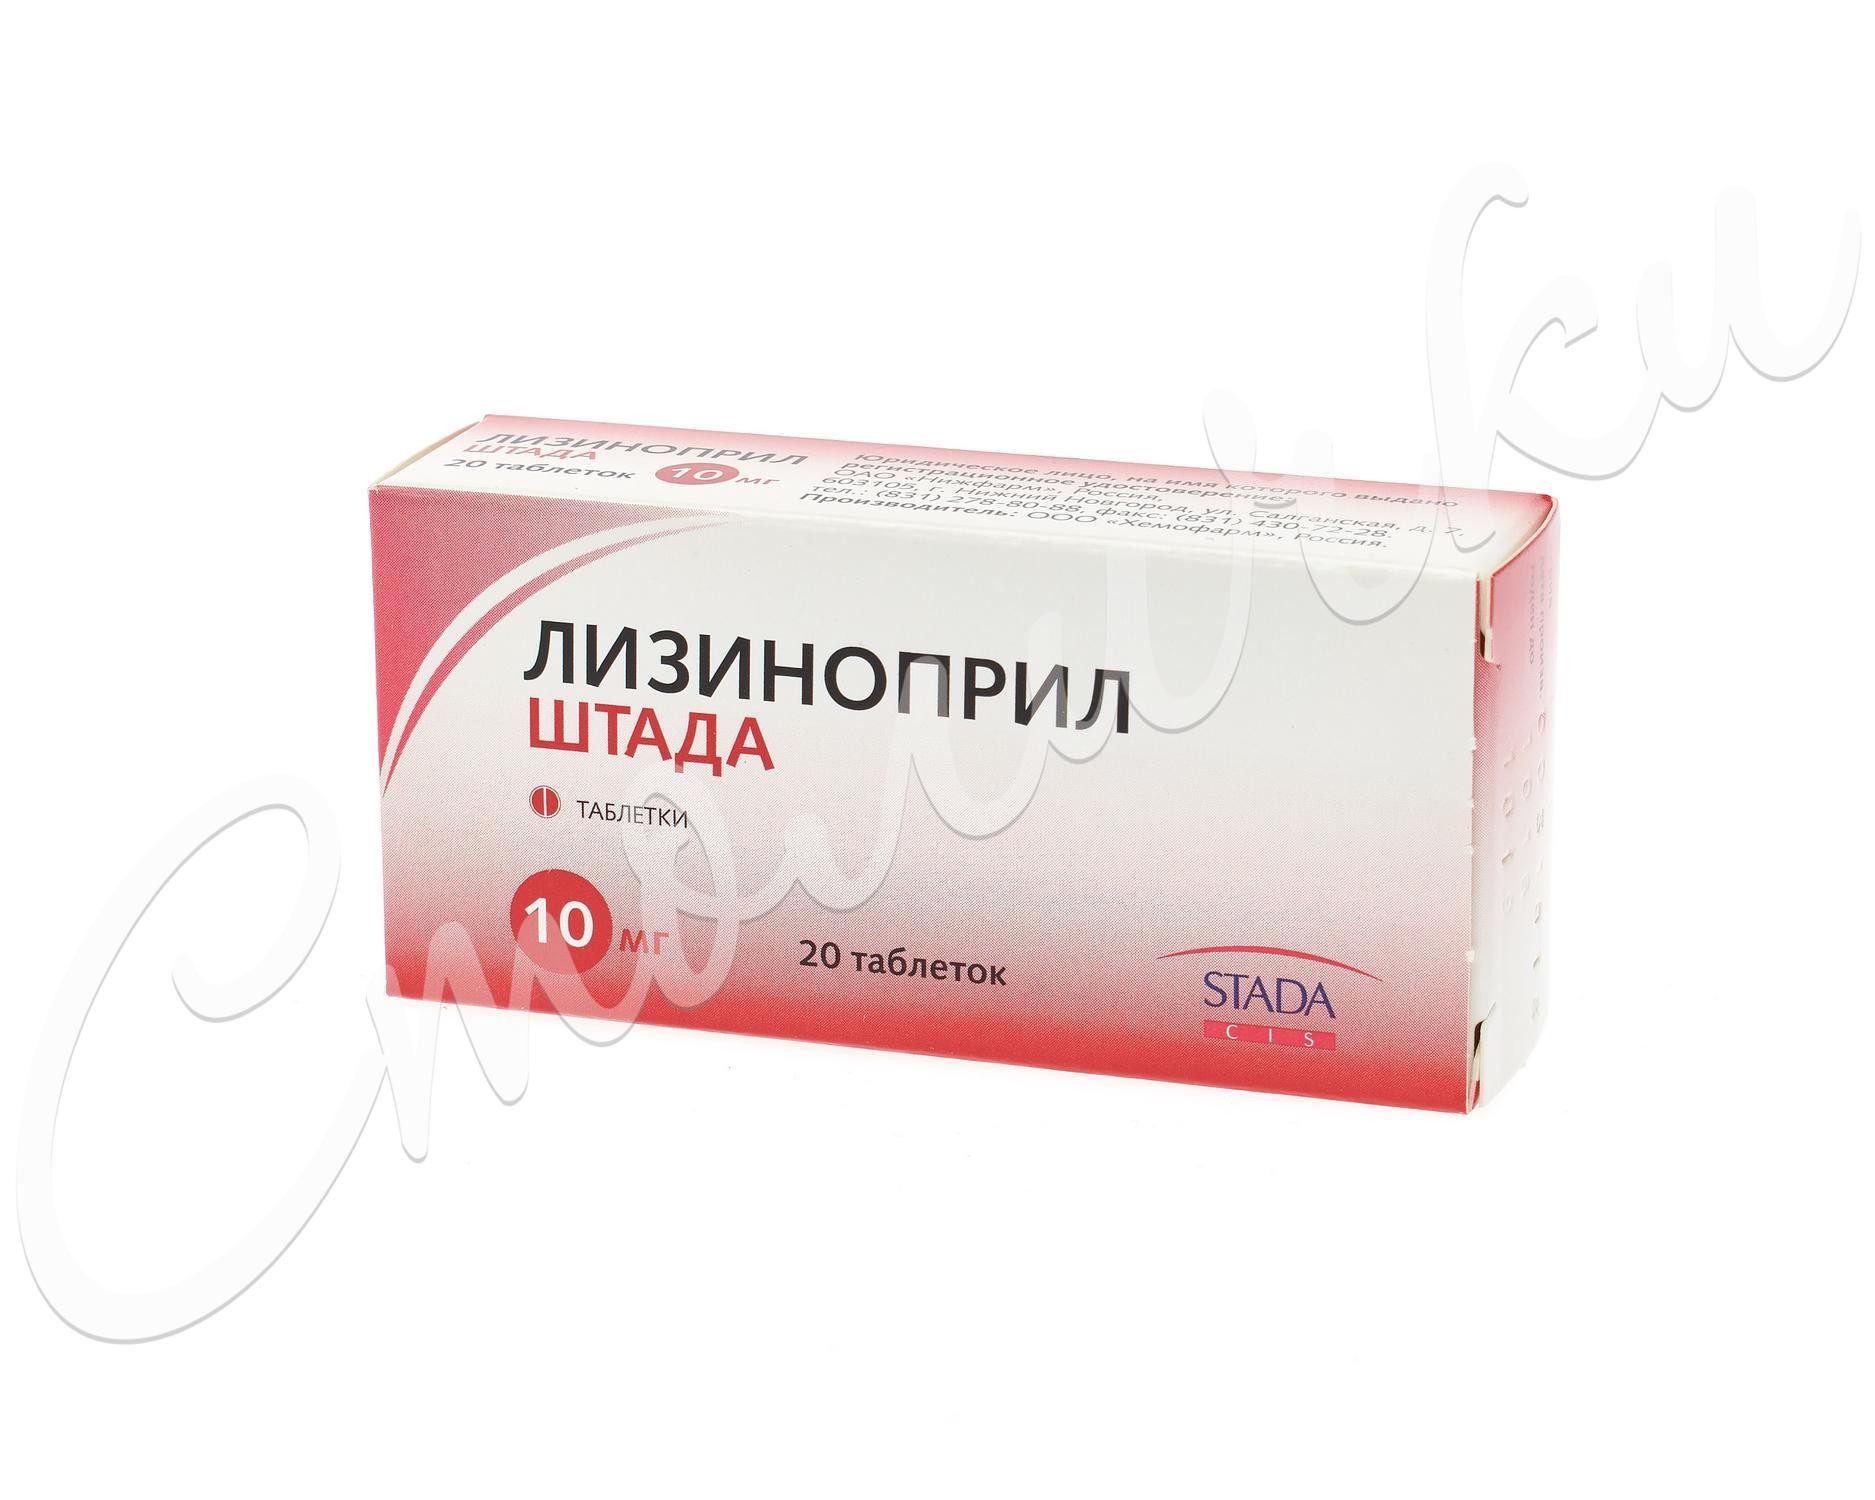 Лизиноприл-Штада таблетки 10мг №20   по цене от 106 рублей